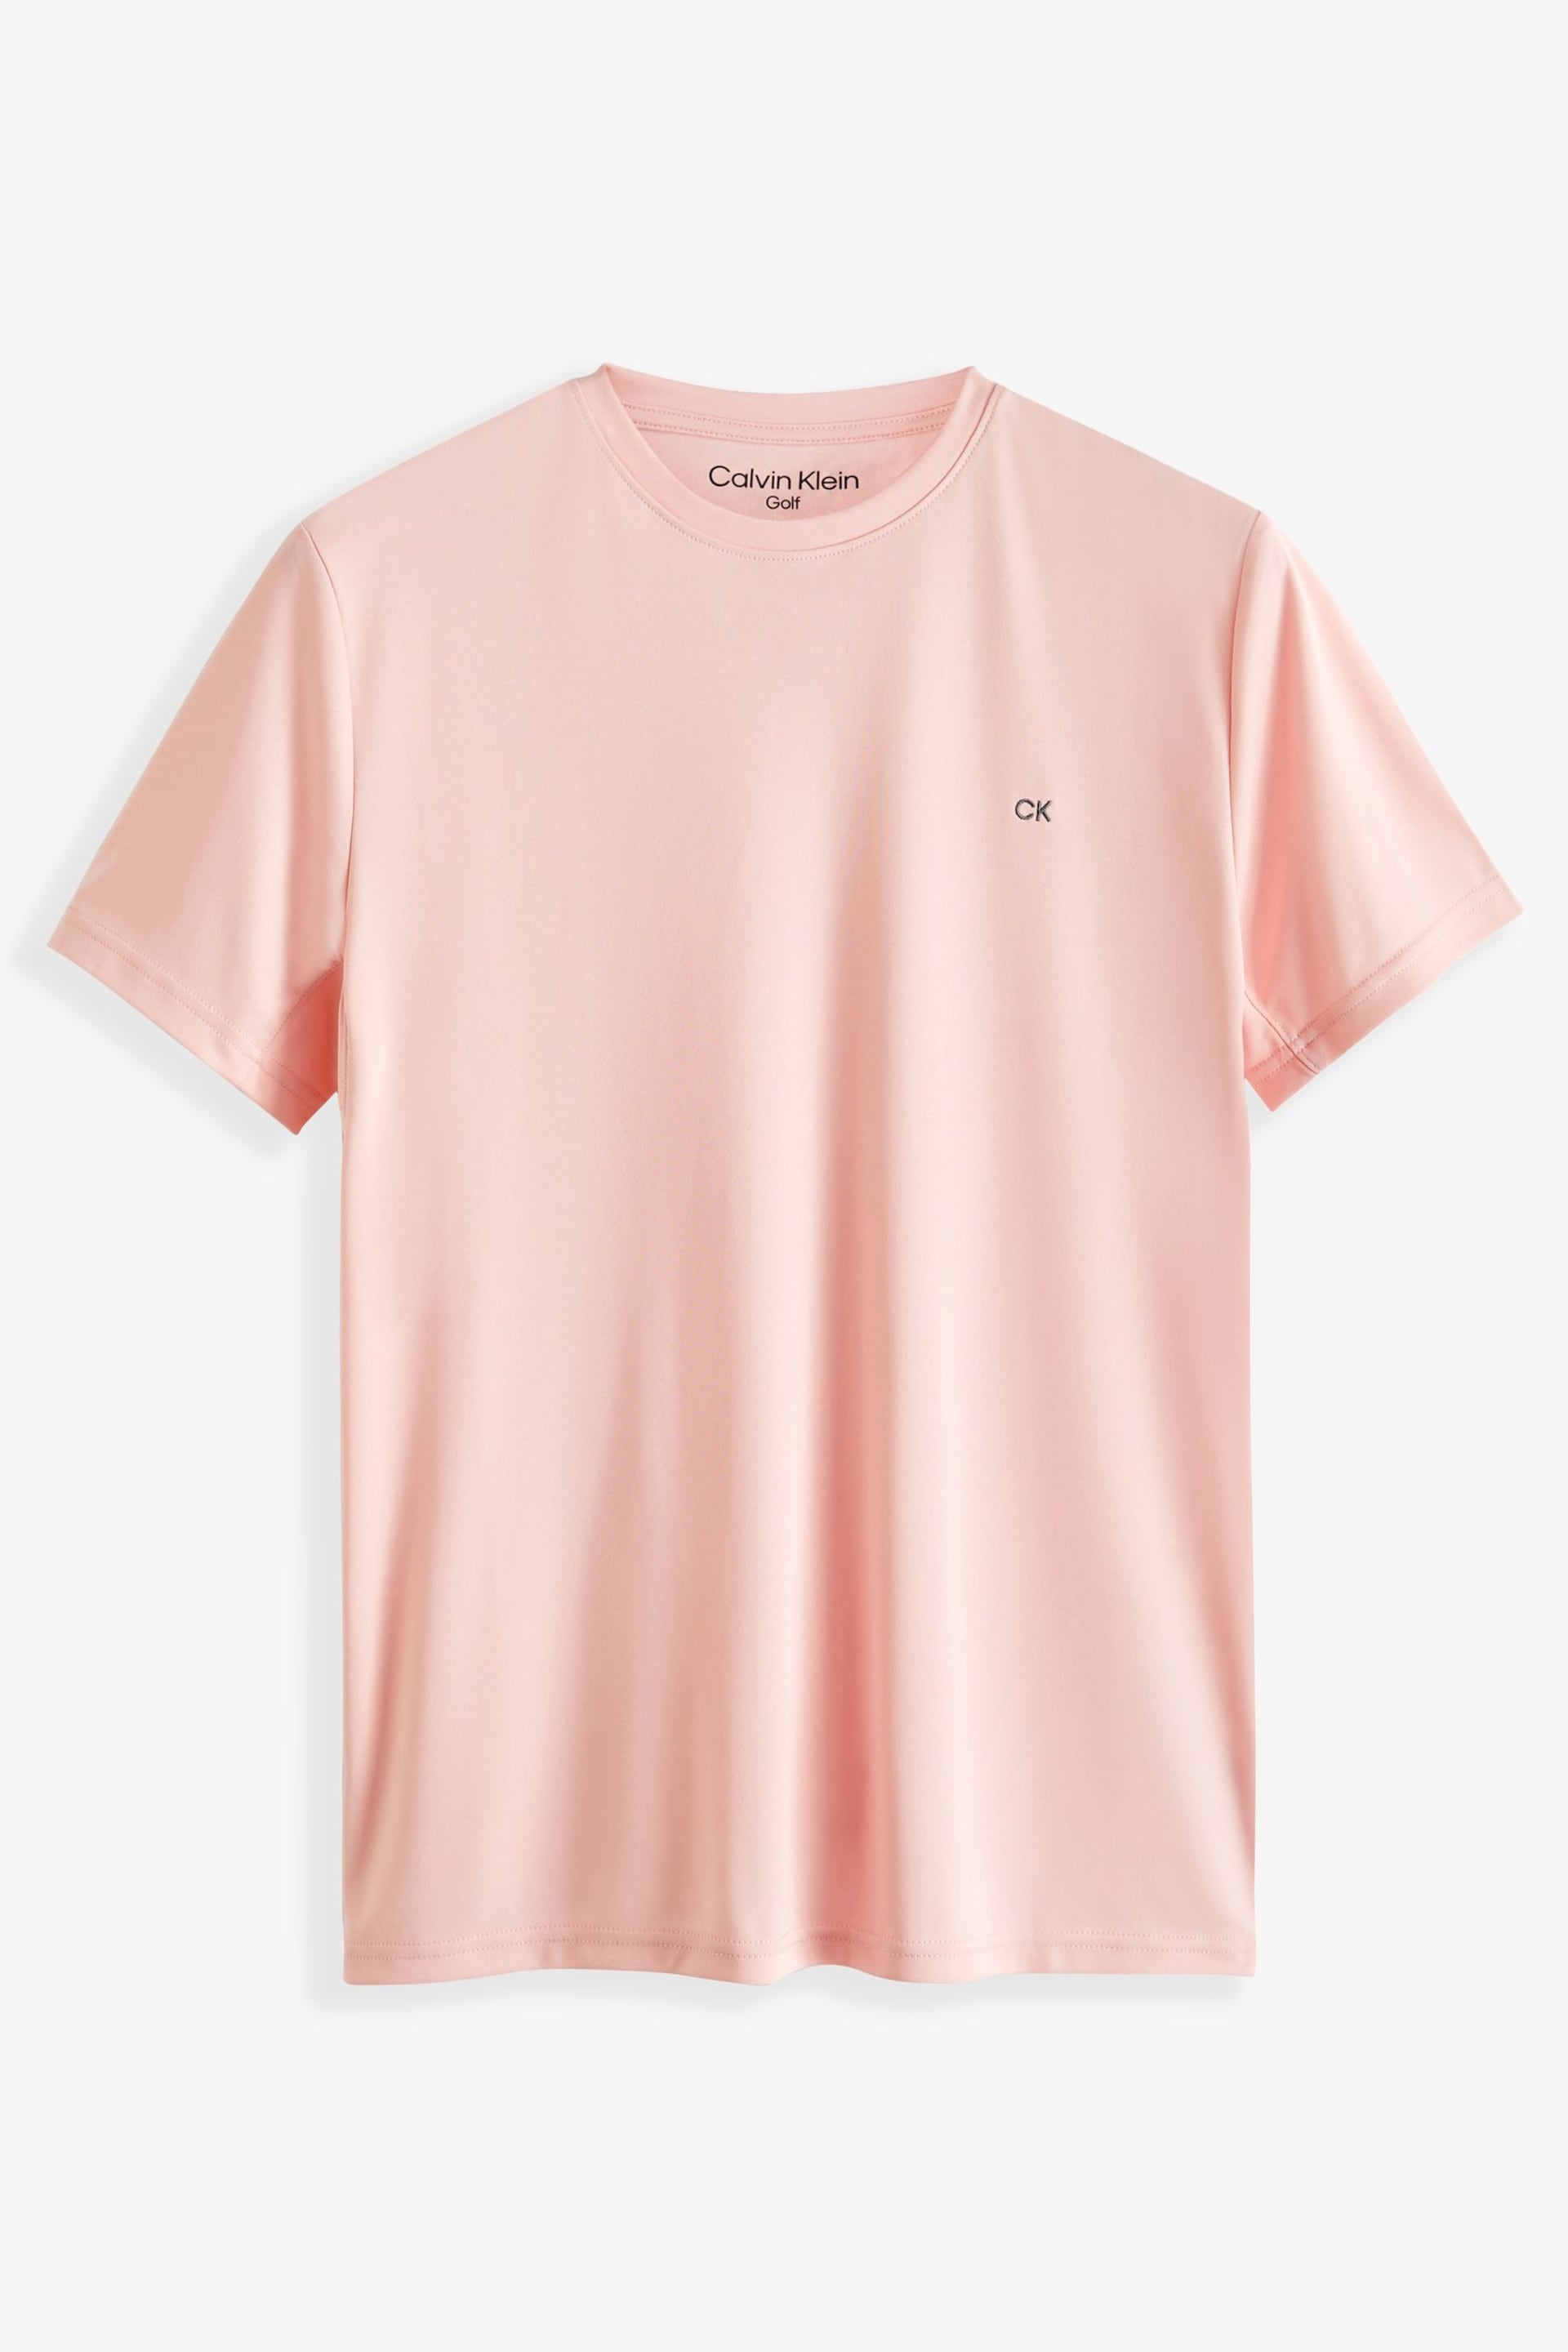 Calvin Klein Golf Tech T-Shirt 2 Pack - Image 3 of 7